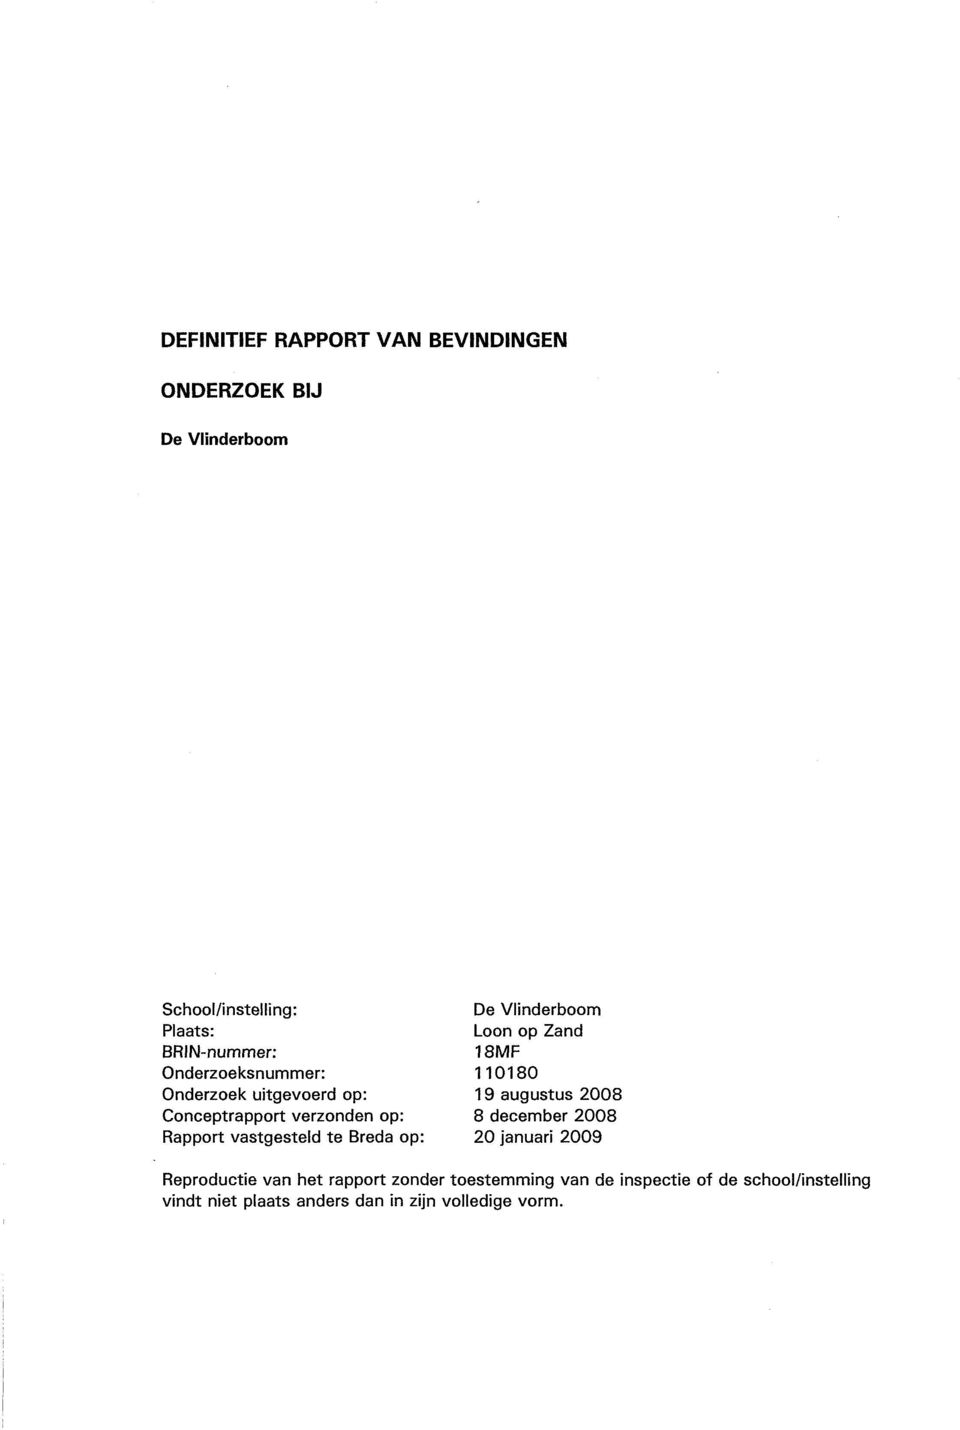 Conceptrapport verzonden op: 8 december 2008 Rapport vastgesteld te Breda op: 20 januari 2009 Reproductie van